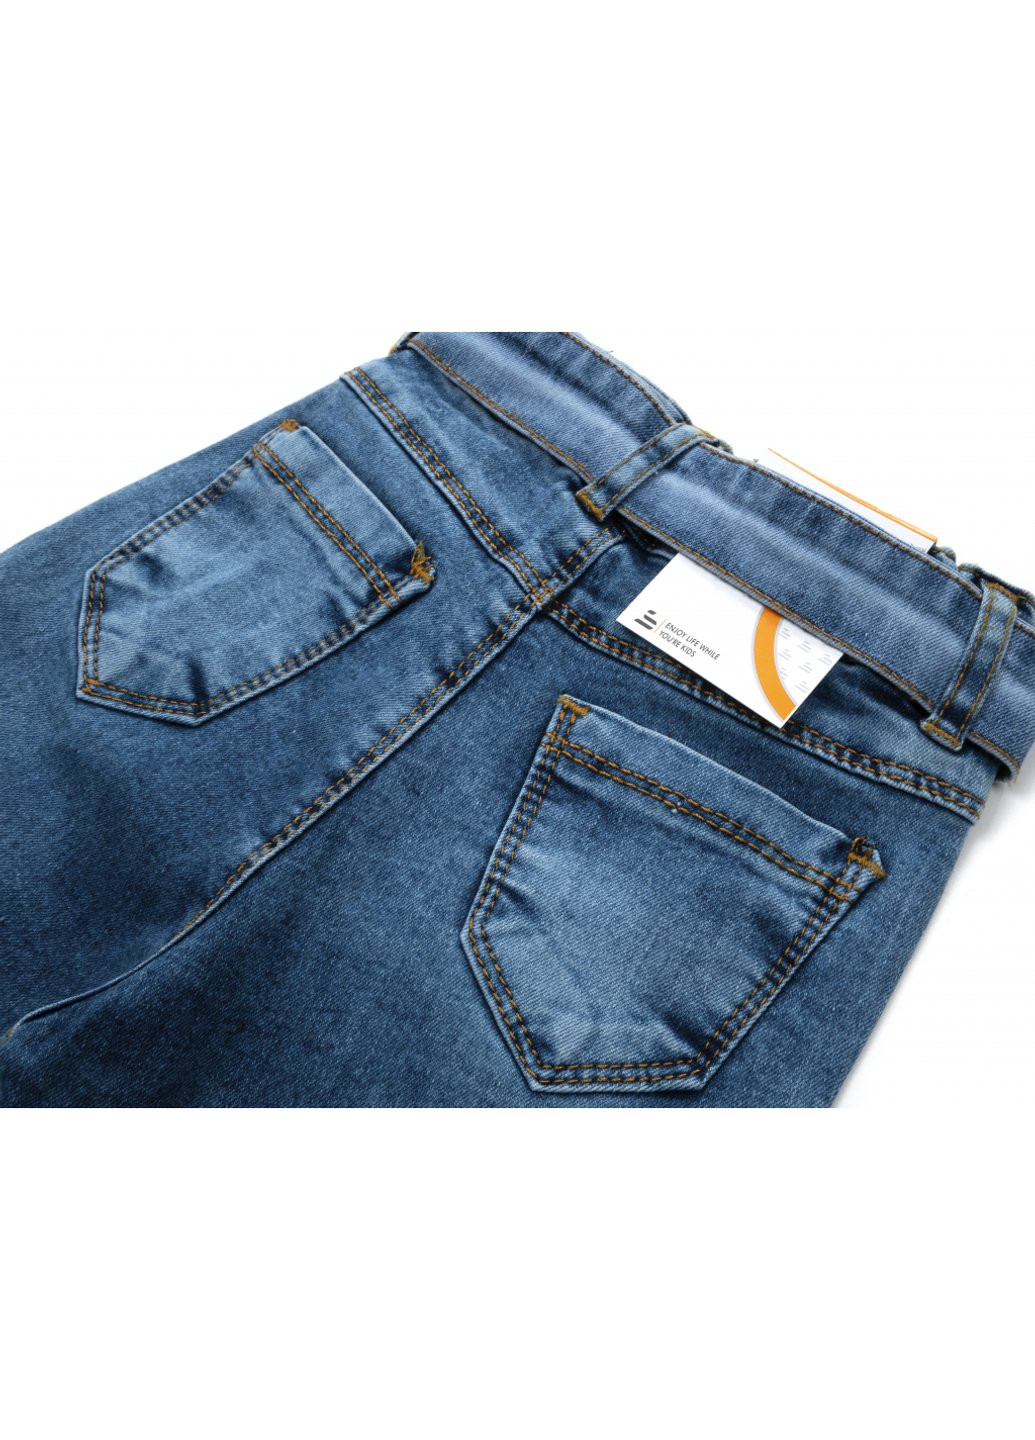 Голубые демисезонные джинсы с поясом (58162-116g-blue) Sercino